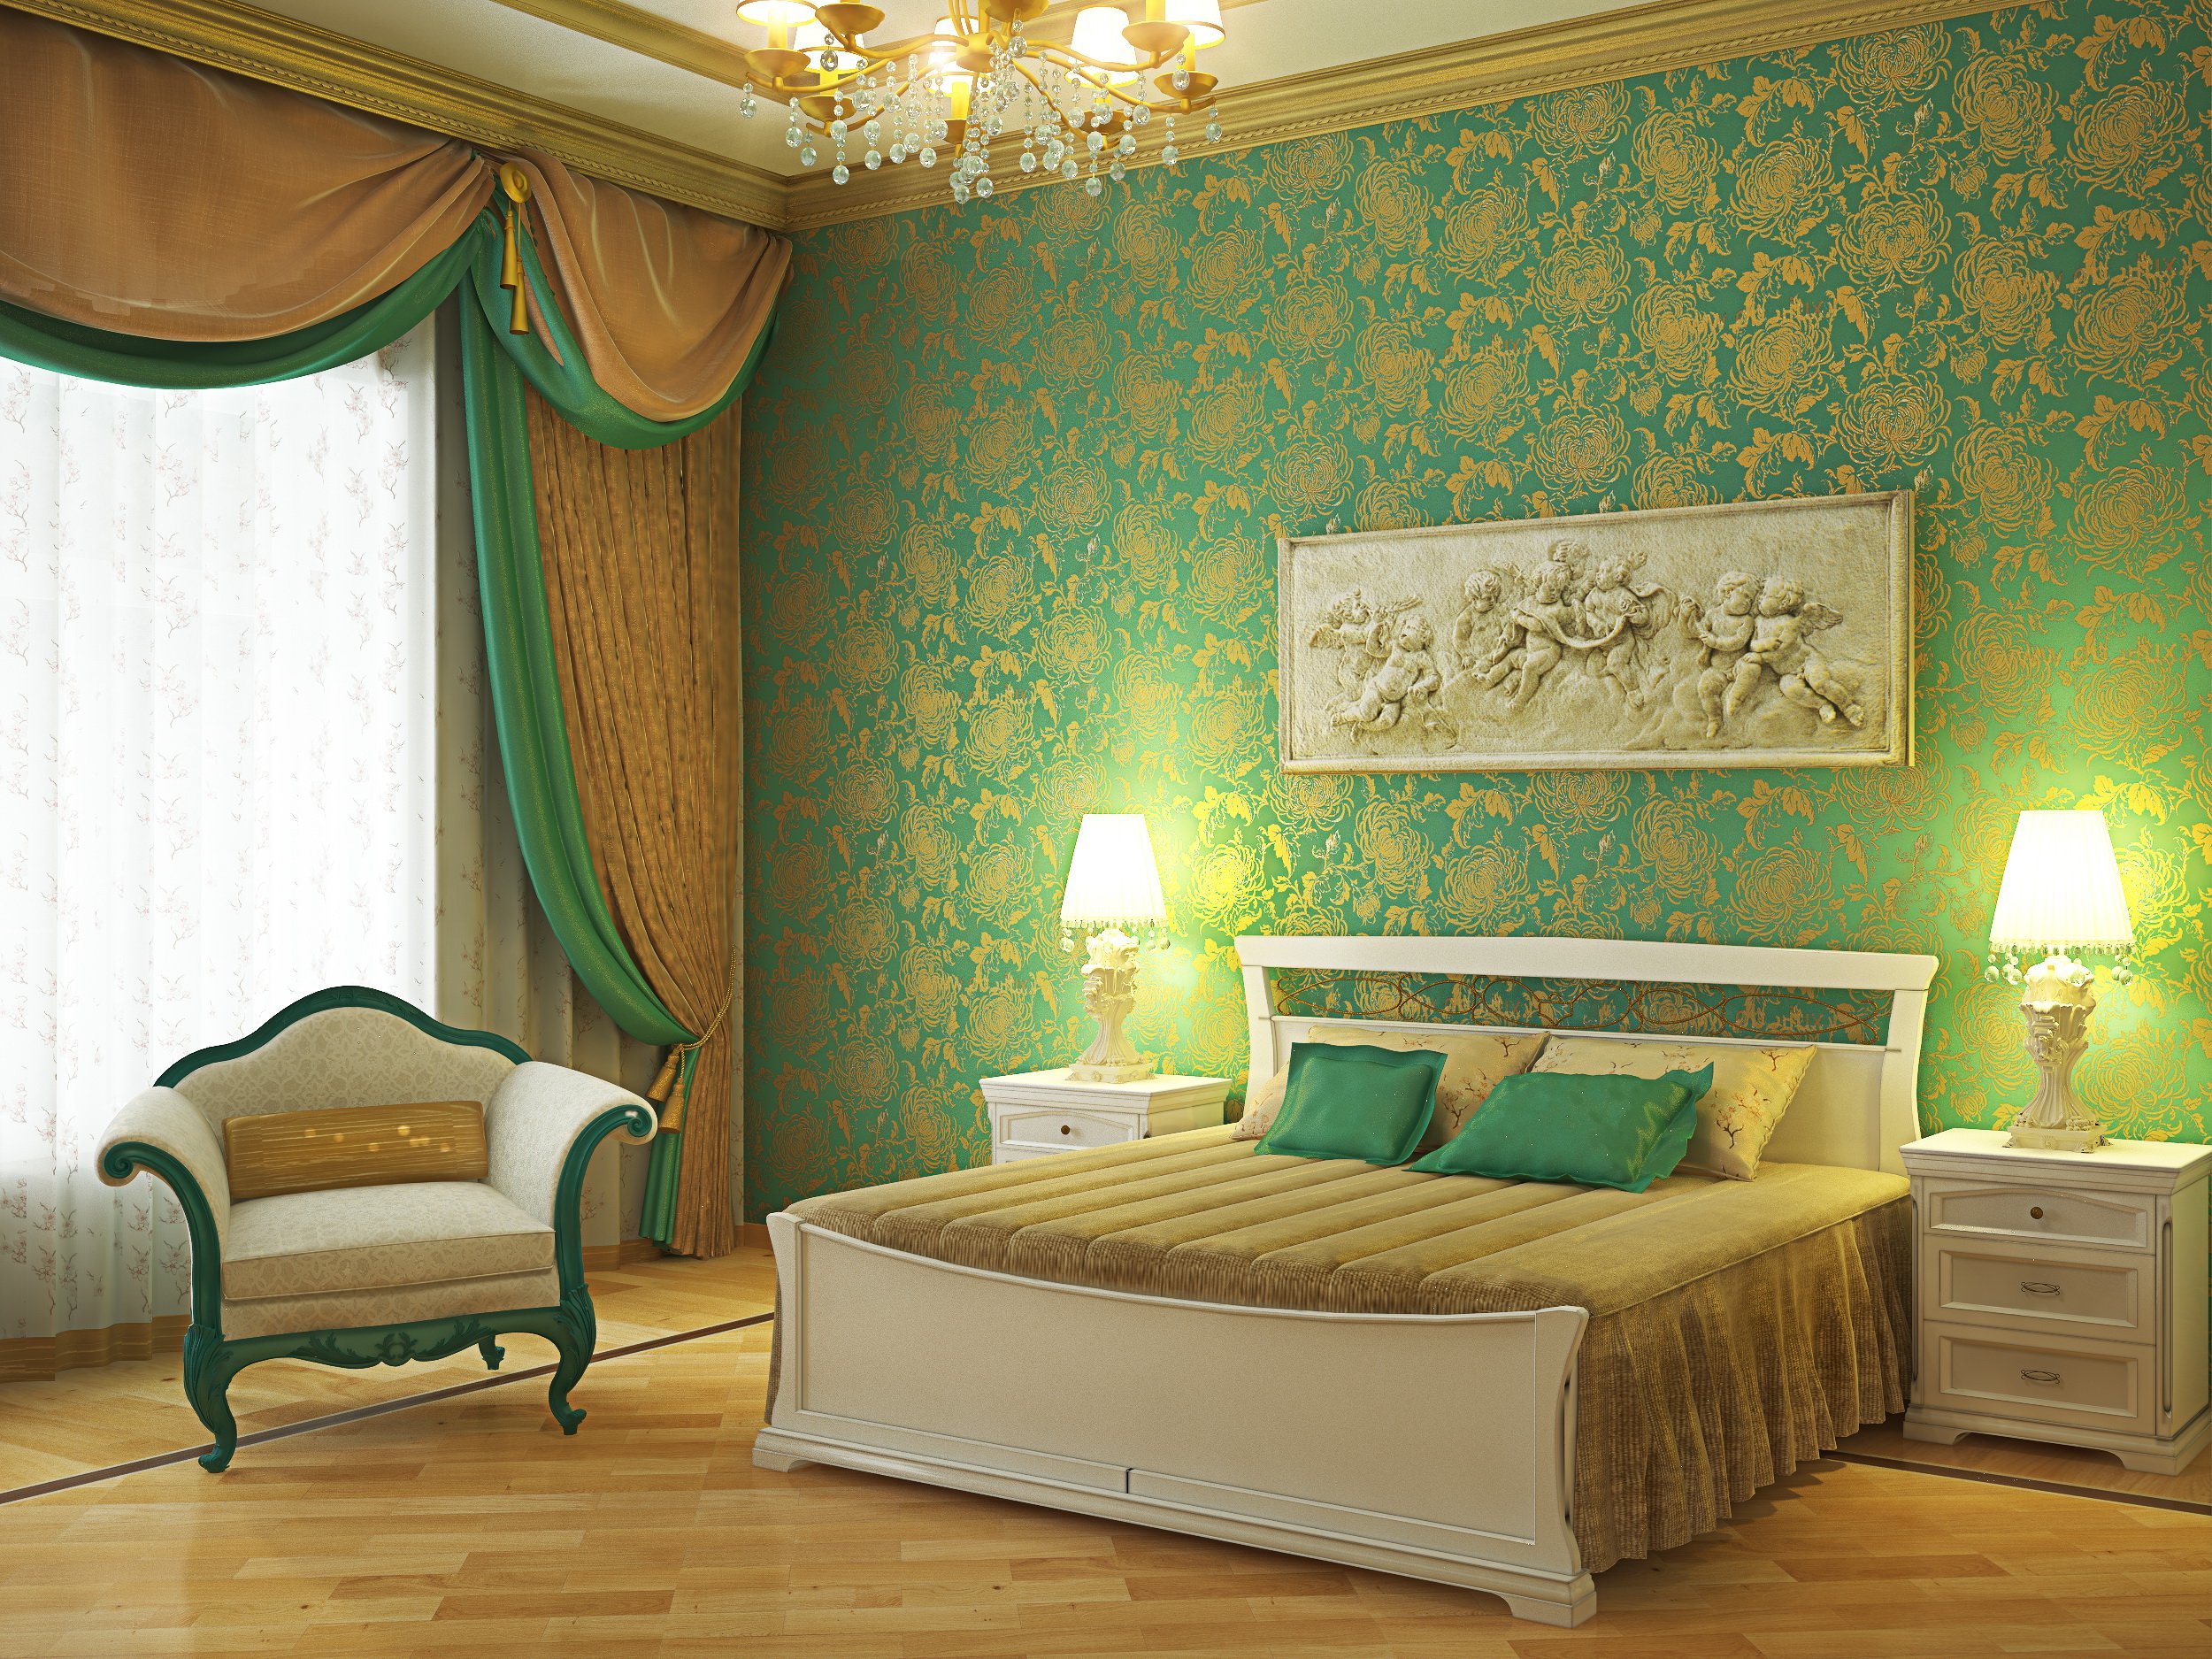 Обои в зеленых тонах. Зеленая спальня. Изумрудные обои в спальне. Спальня в зеленом цвете. Спальня в зеленых оттенках.